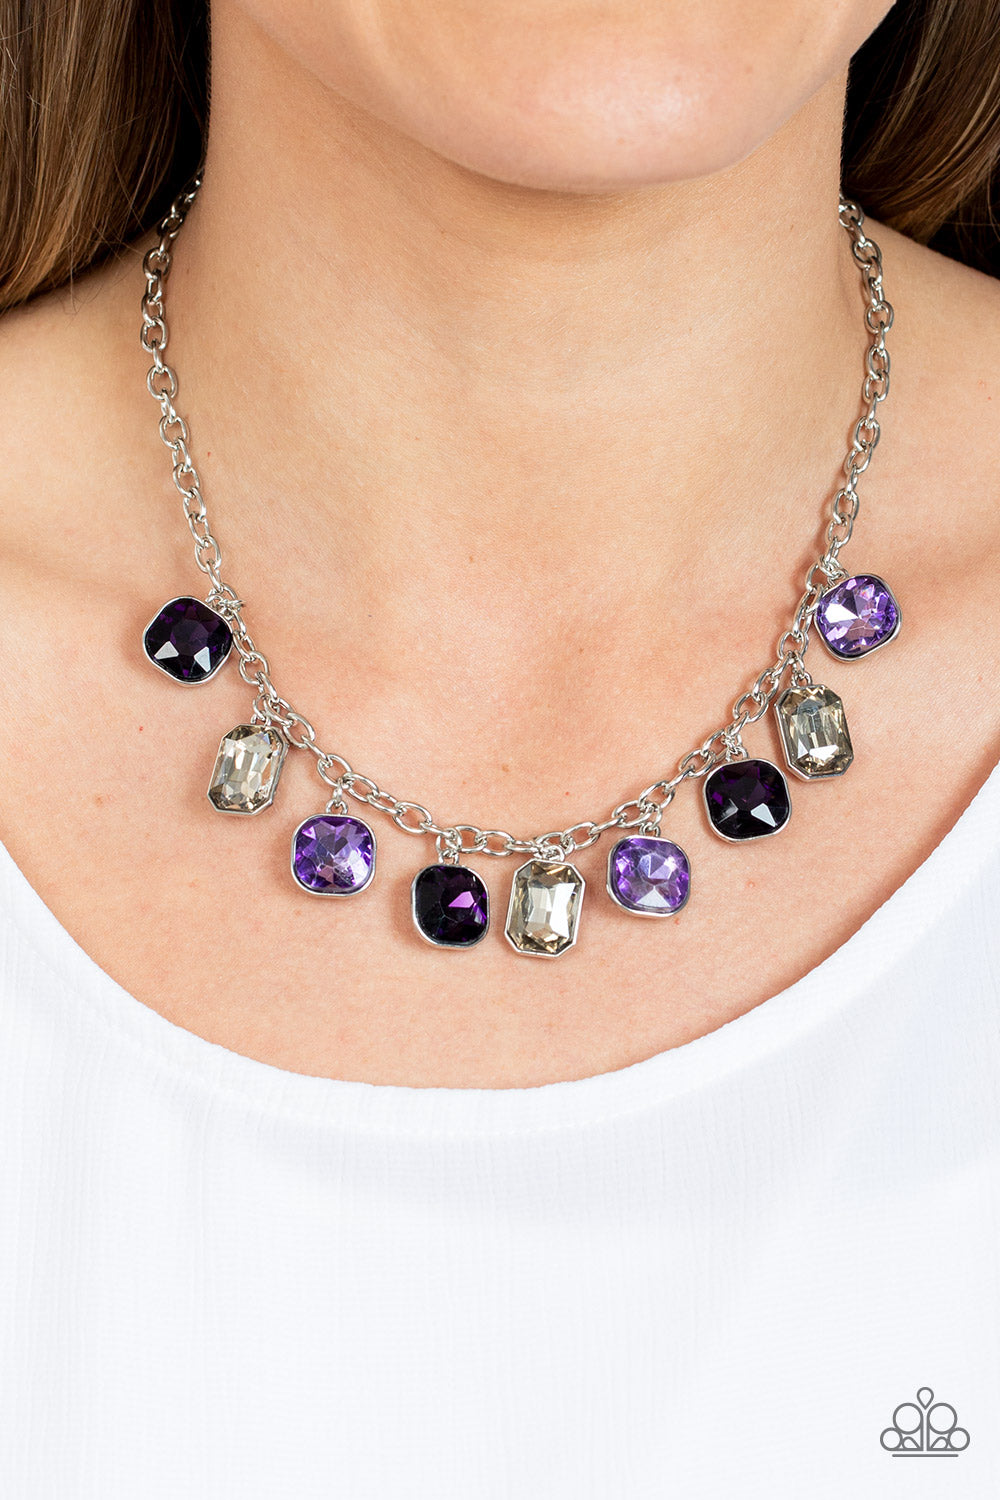 Paparazzi “Best Decision Ever” Purple Necklace Earring Set - Cindysblingboutique